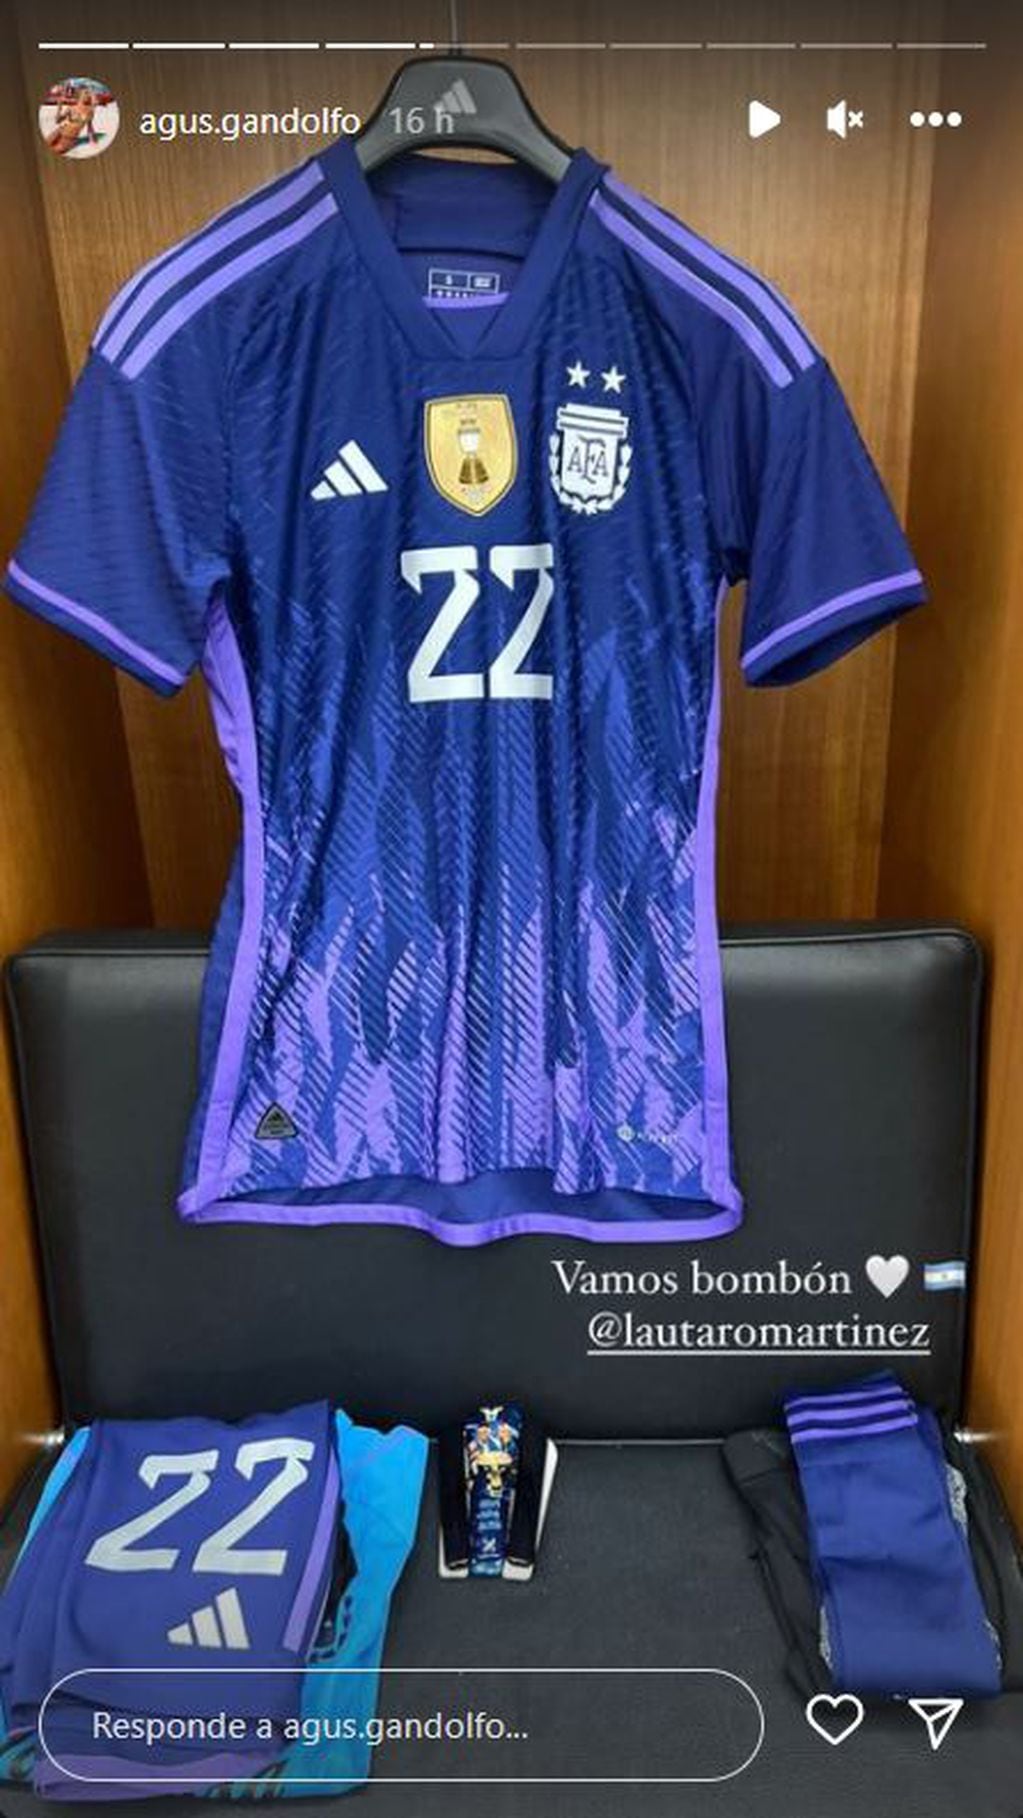 Posteo de Agustina Gandolfo apoyando a Lautaro Martínez y a la Selección Argentina.